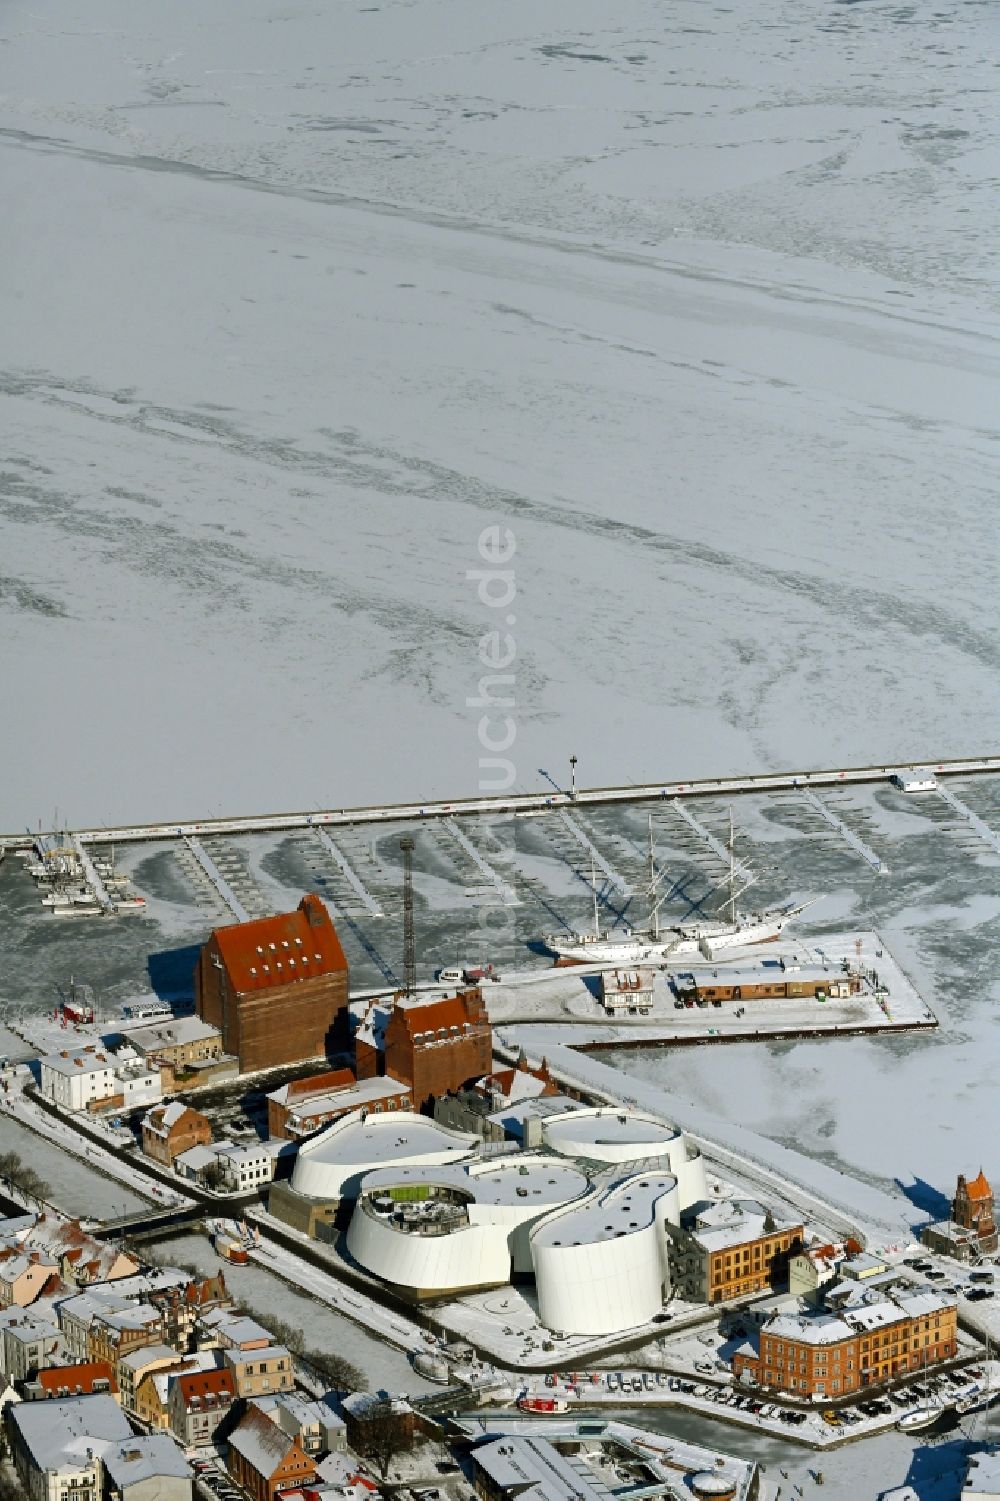 Luftaufnahme Stralsund - Winterluftbild Hafeninsel mit dem Ozeaneum Meereskunde- Museum in der Hansestadt Stralsund in Mecklenburg - Vorpommern